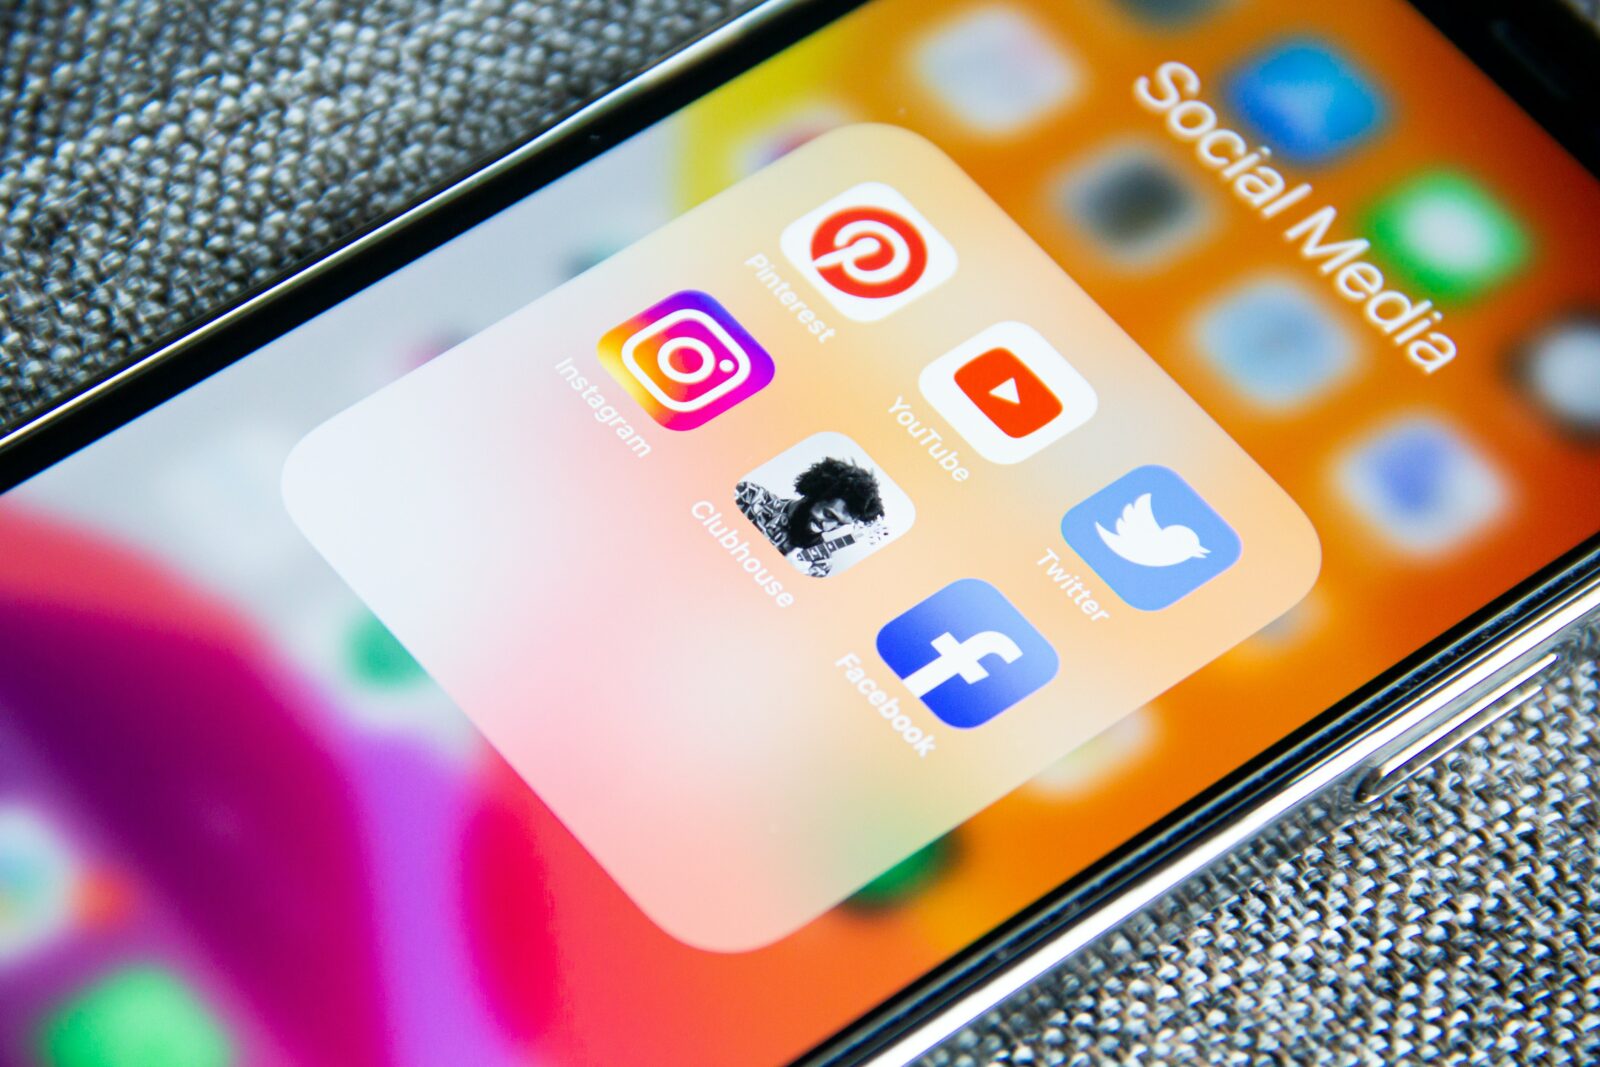 Online Safety Bill on social media platforms